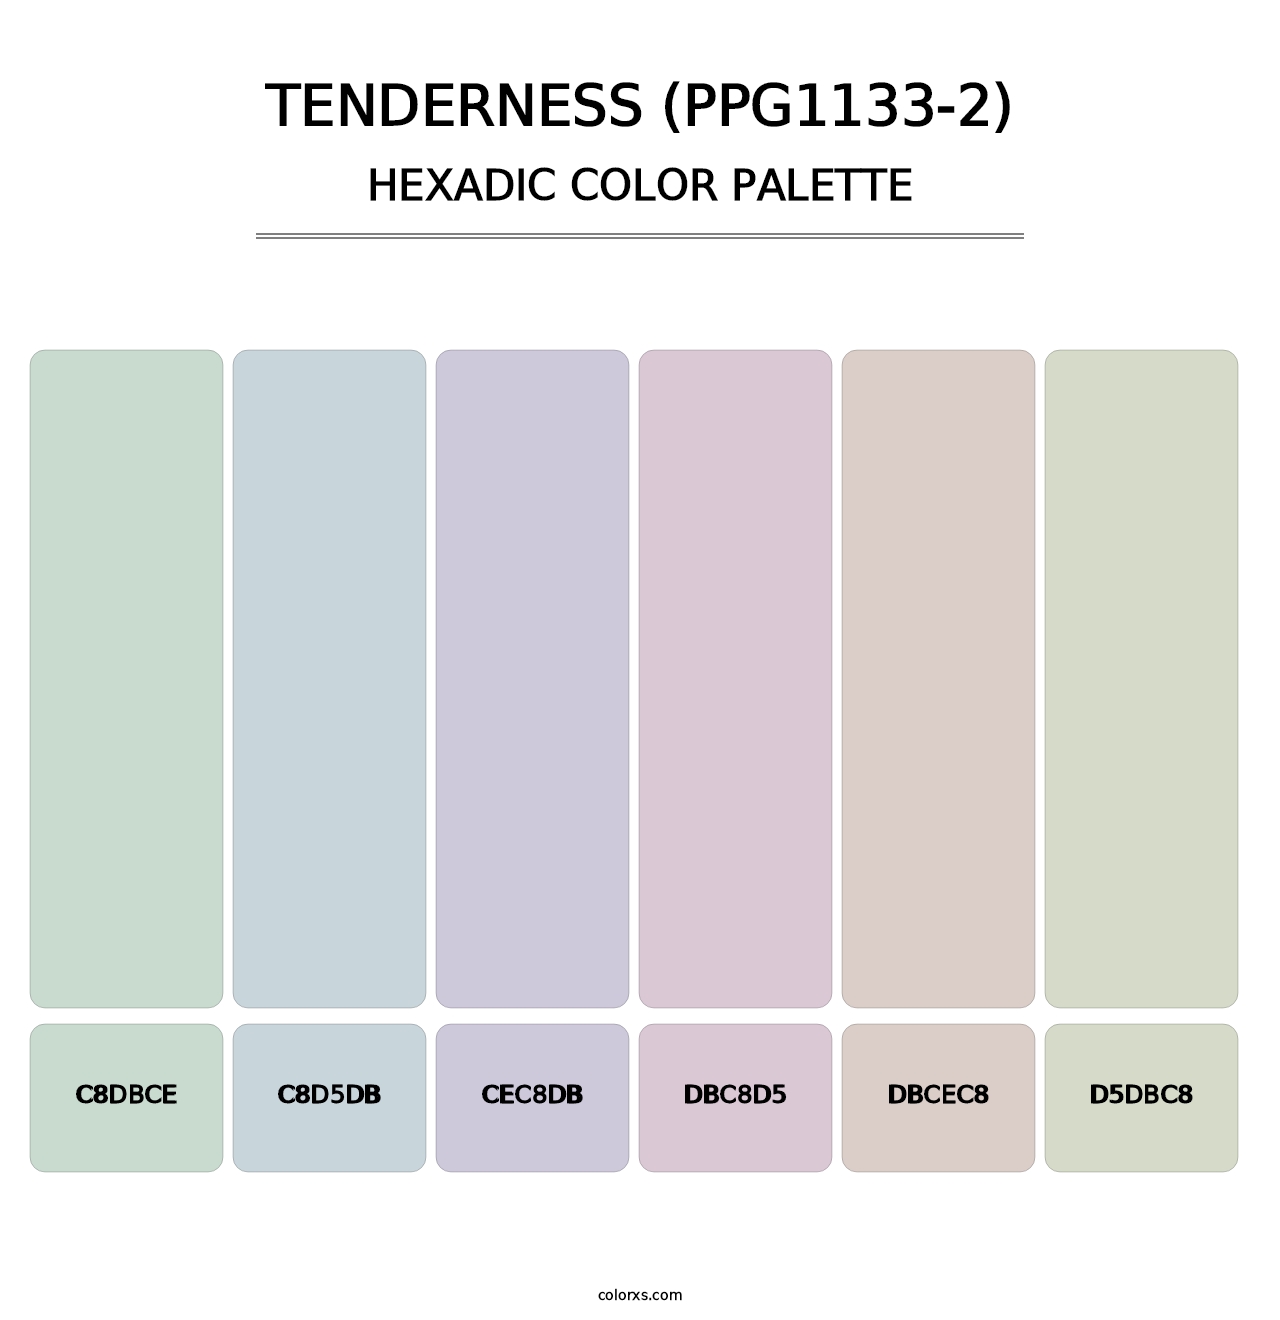 Tenderness (PPG1133-2) - Hexadic Color Palette